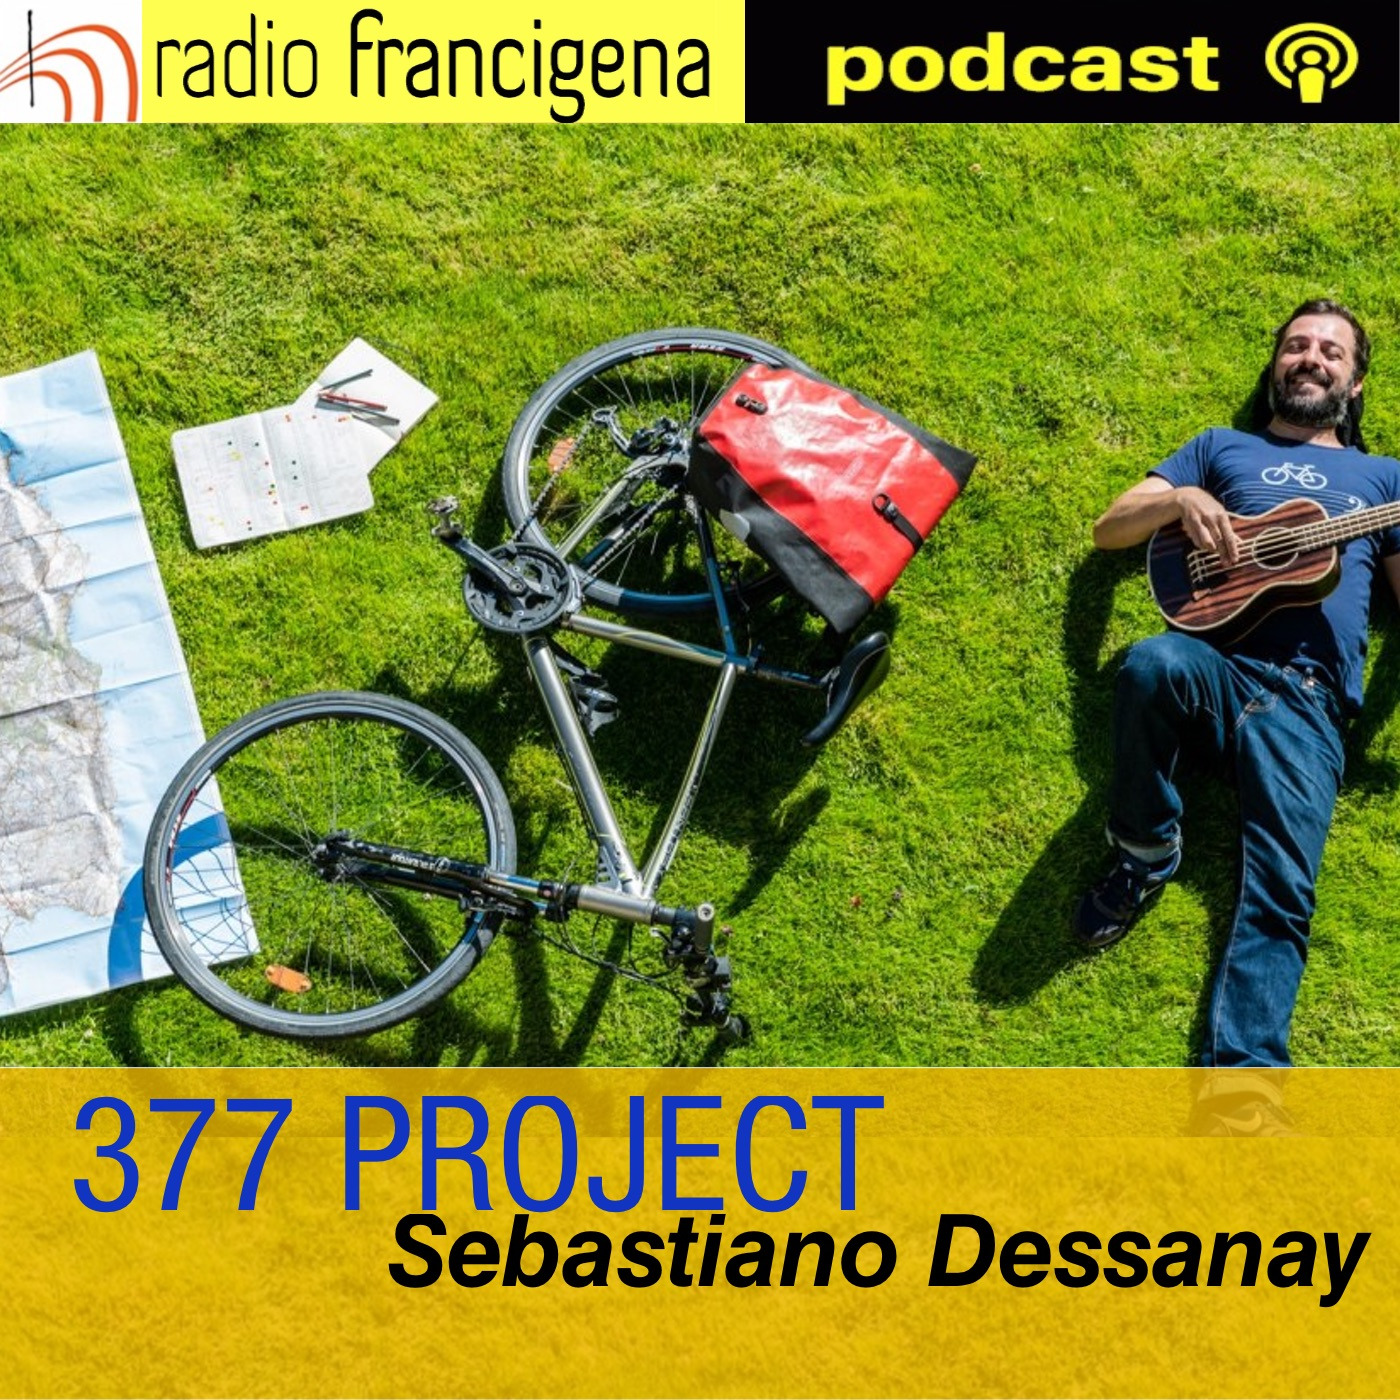 377 PROJECT - Sebastiano Dessanay - 16